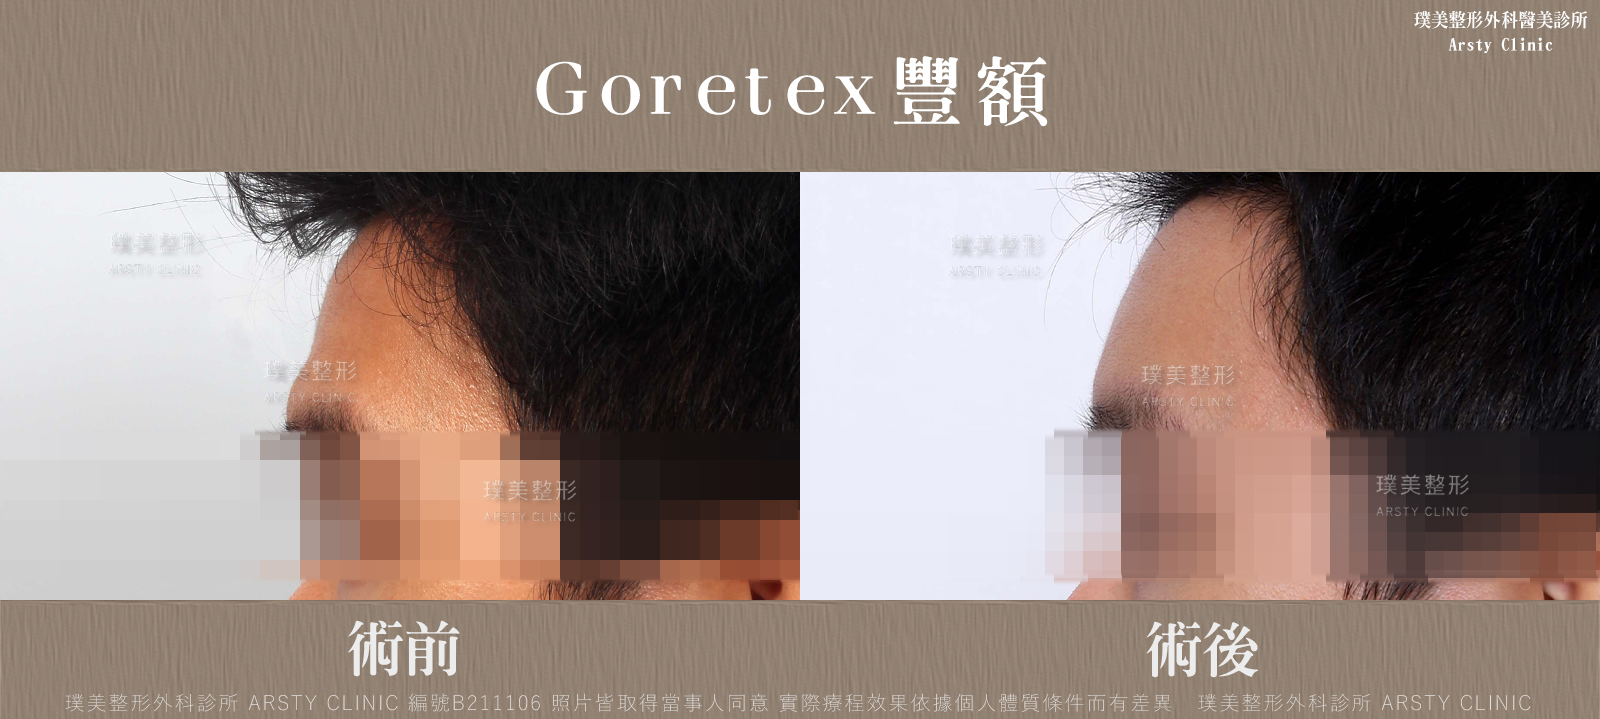 荊偉政醫師Goretex豐額、內視鏡豐額手術案例